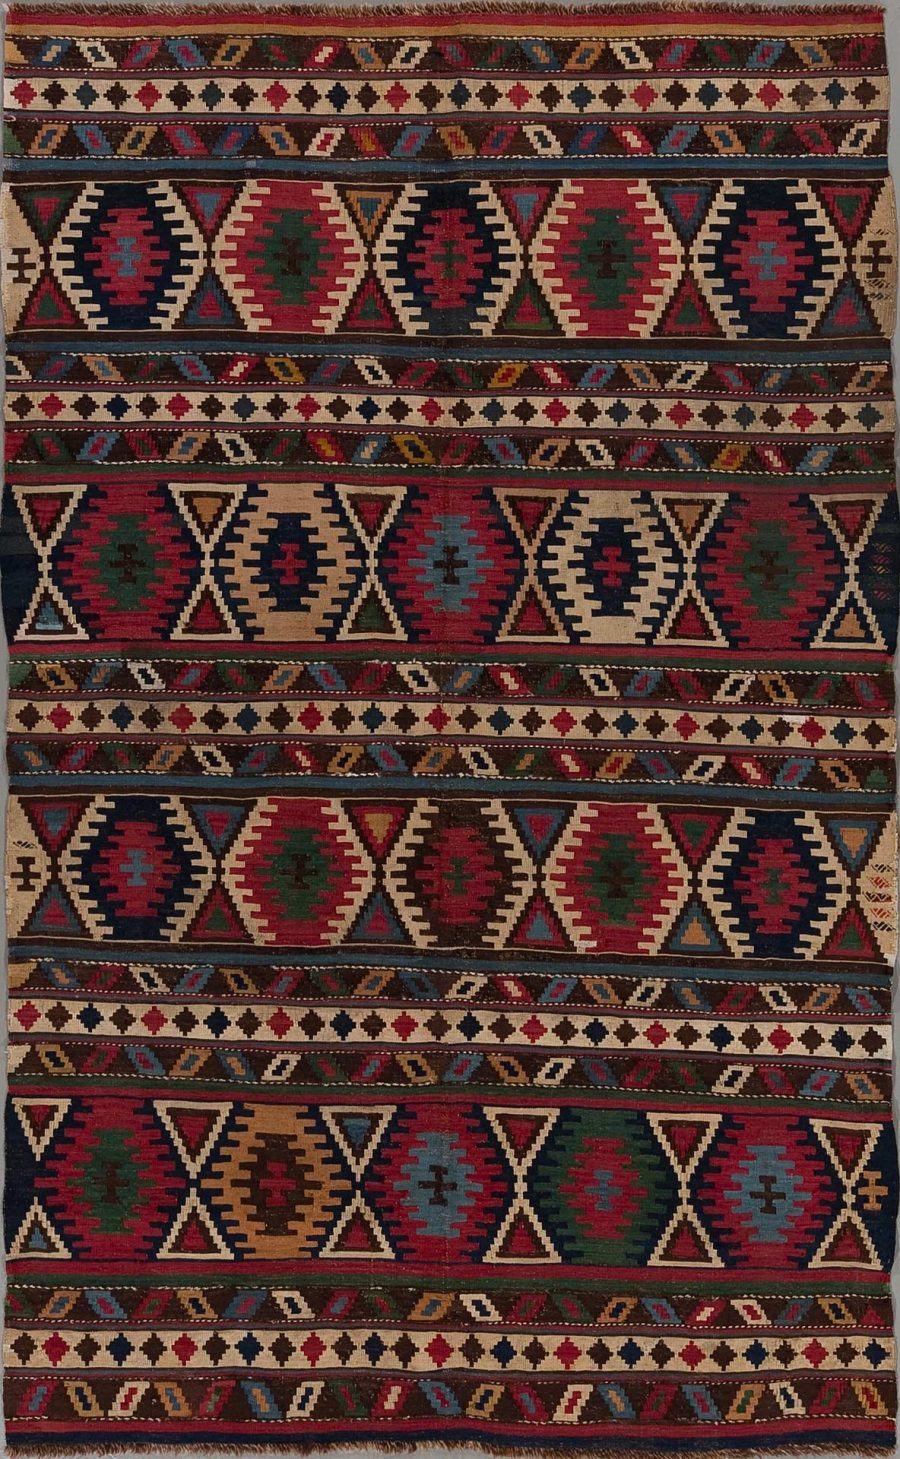 Traditioneller handgewebter Teppich mit wiederkehrenden geometrischen Mustern und mehrfarbigen Motiven auf dunklem Grund.